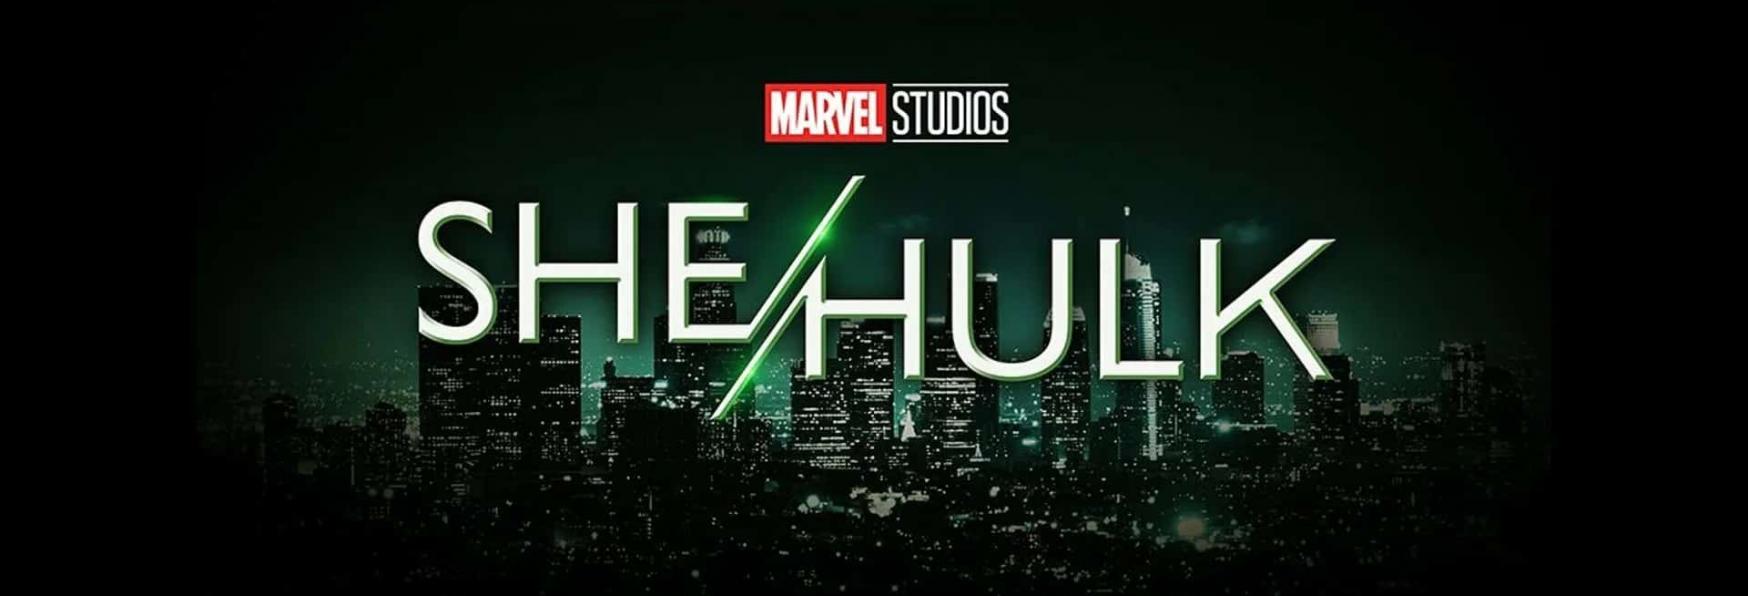 She-Hulk: Disney+ svela per Errore la Data di Uscita della Serie TV?